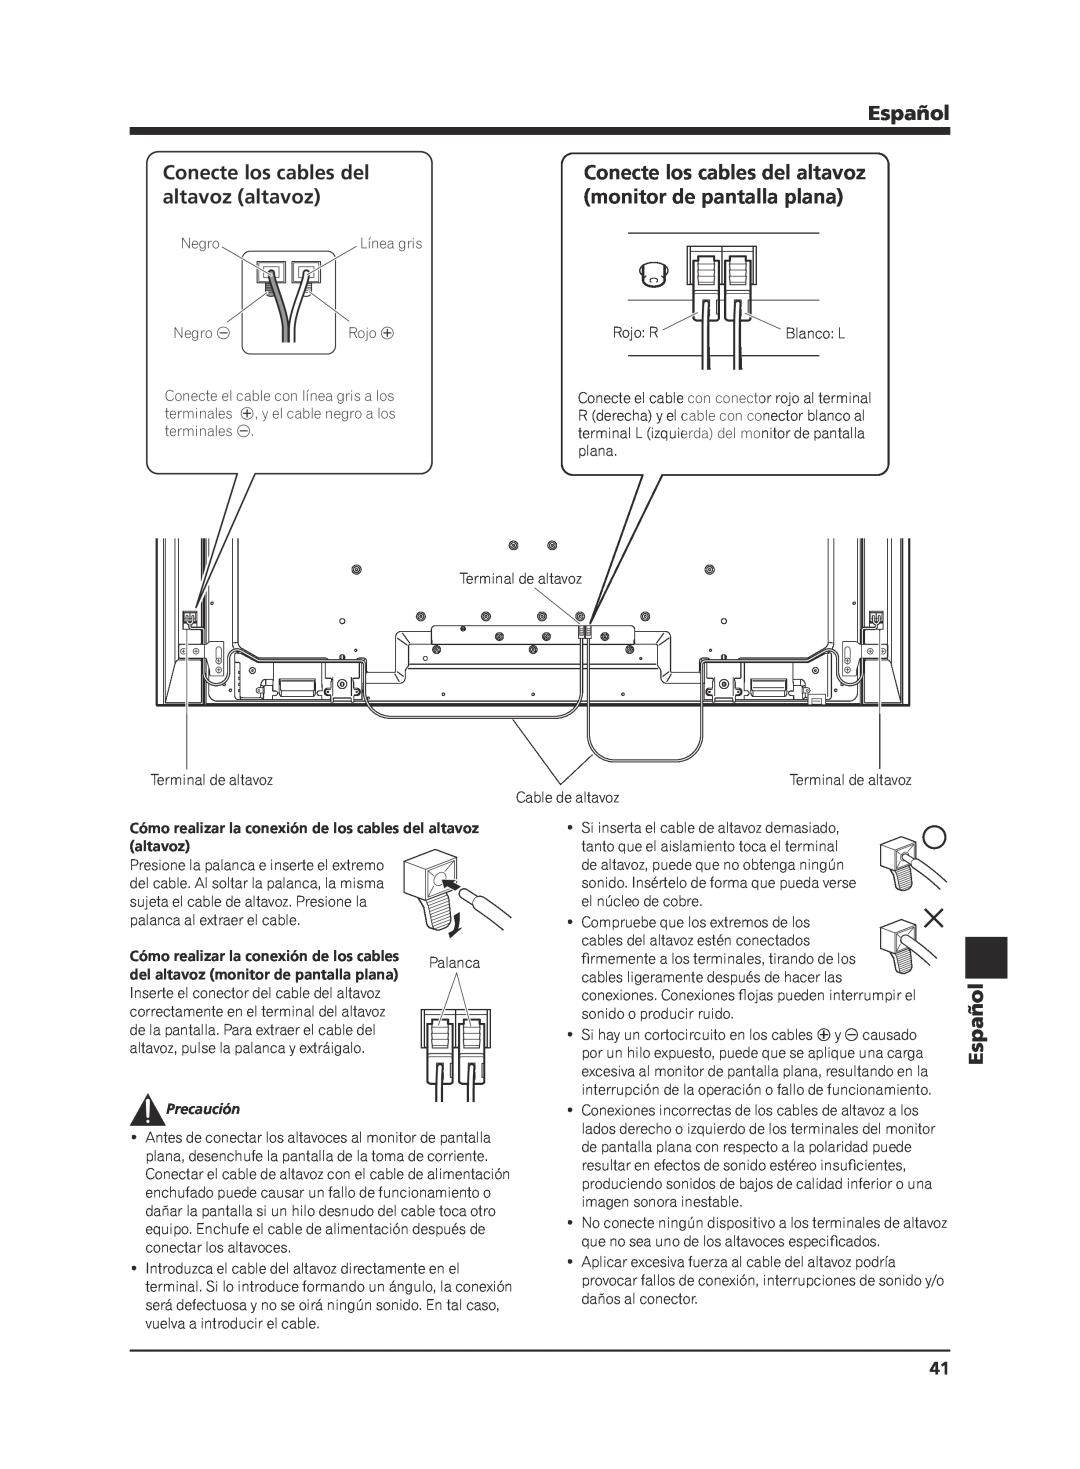 Pioneer KRP-S02 manual Conecte los cables del, altavoz altavoz, monitor de pantalla plana, Español, Palanca, Precaución 